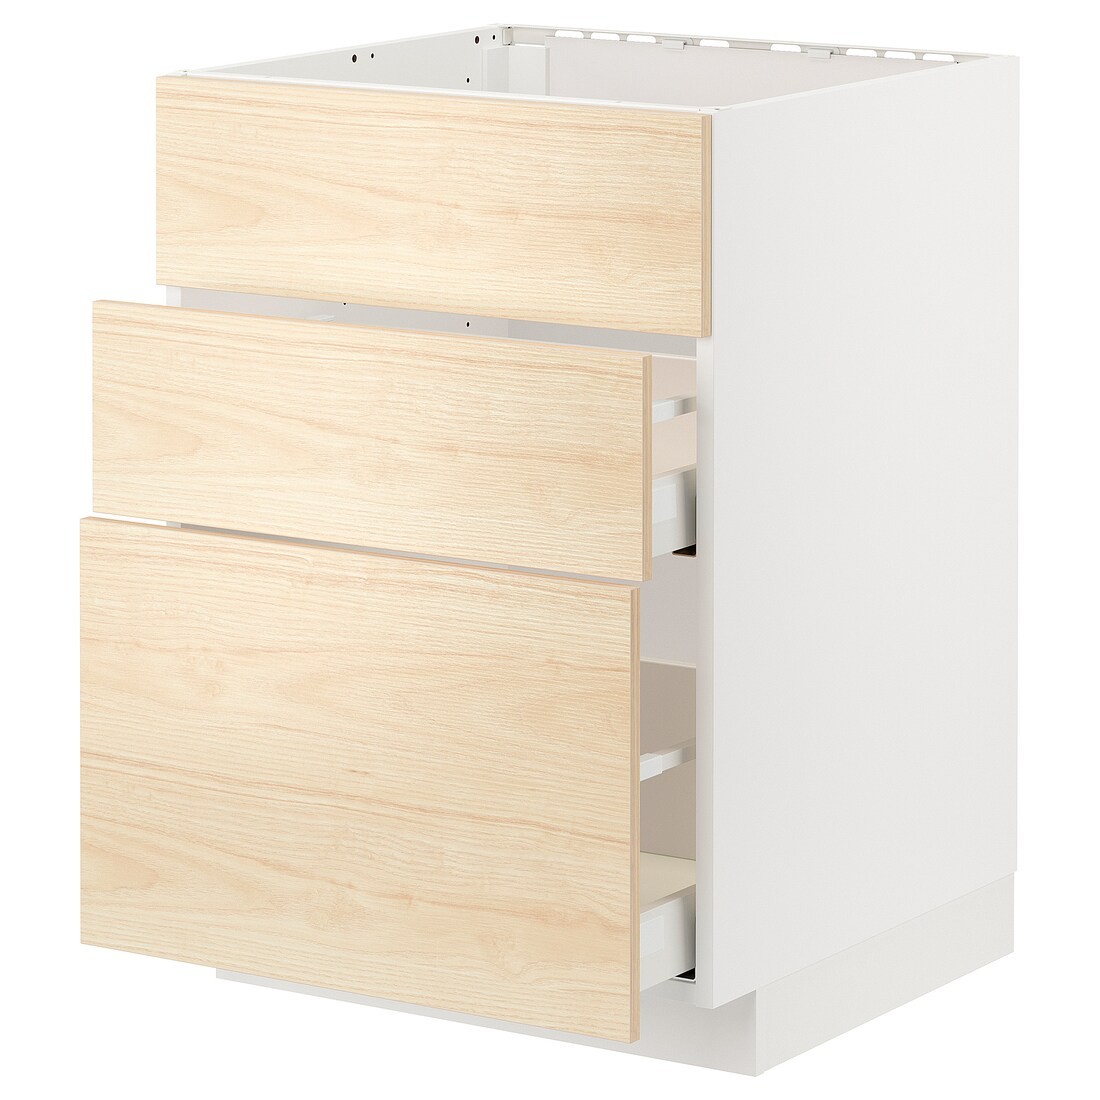 IKEA METOD МЕТОД / MAXIMERA МАКСИМЕРА Напольный шкаф для варочной панели / вытяжка с ящиком, белый / Askersund узор светлый ясень, 60x60 см 99477588 994.775.88